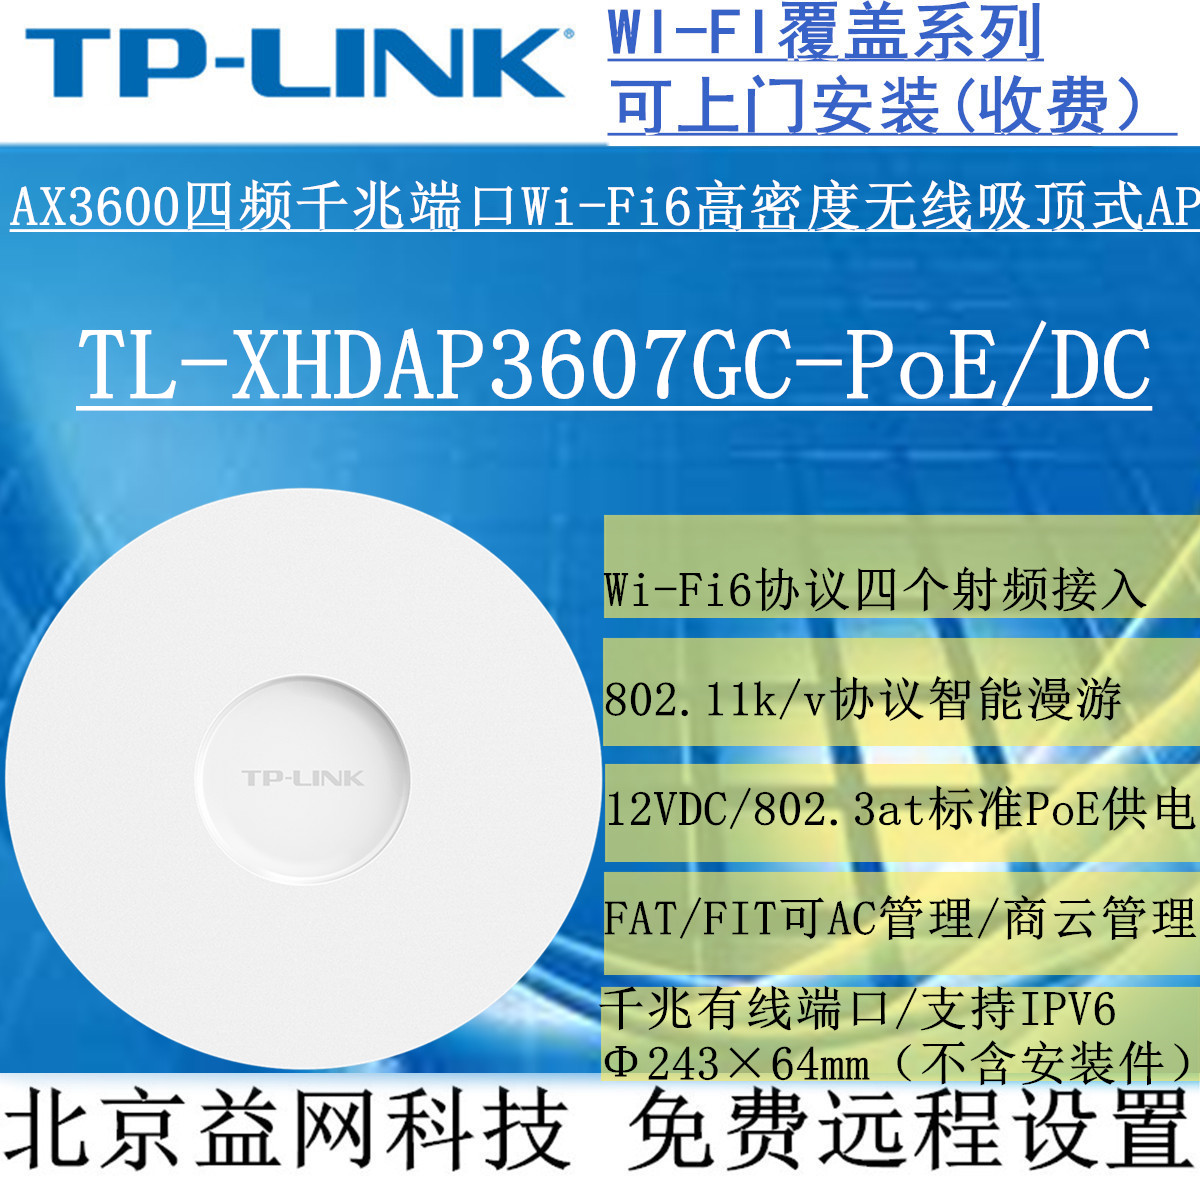 TP-LINK TL-XHDAP3607GC-POE | DC AX3600   ⰡƮ WI-FI6  õ AP-